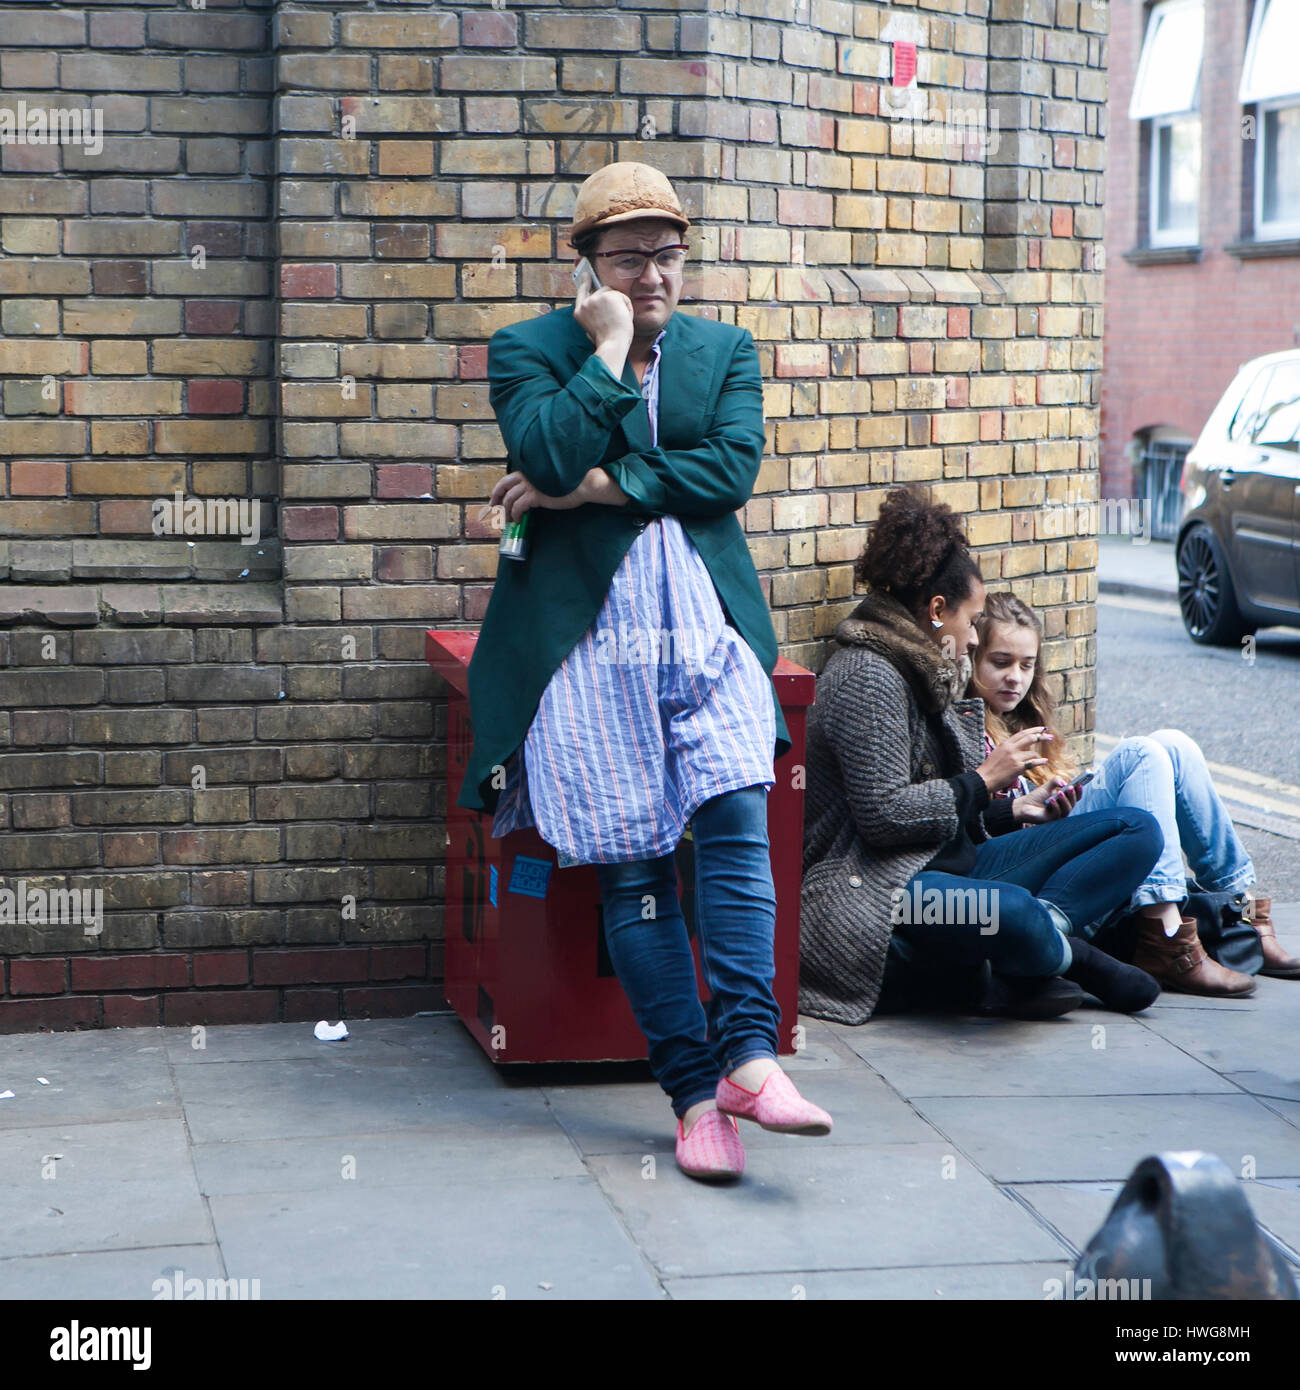 Londra, Inghilterra - Luglio 12, 2016 Un uomo in giacca verde e beige cap sta parlando al telefono, appoggiata contro il muro. Egli si presenta come un tipico offrono Foto Stock